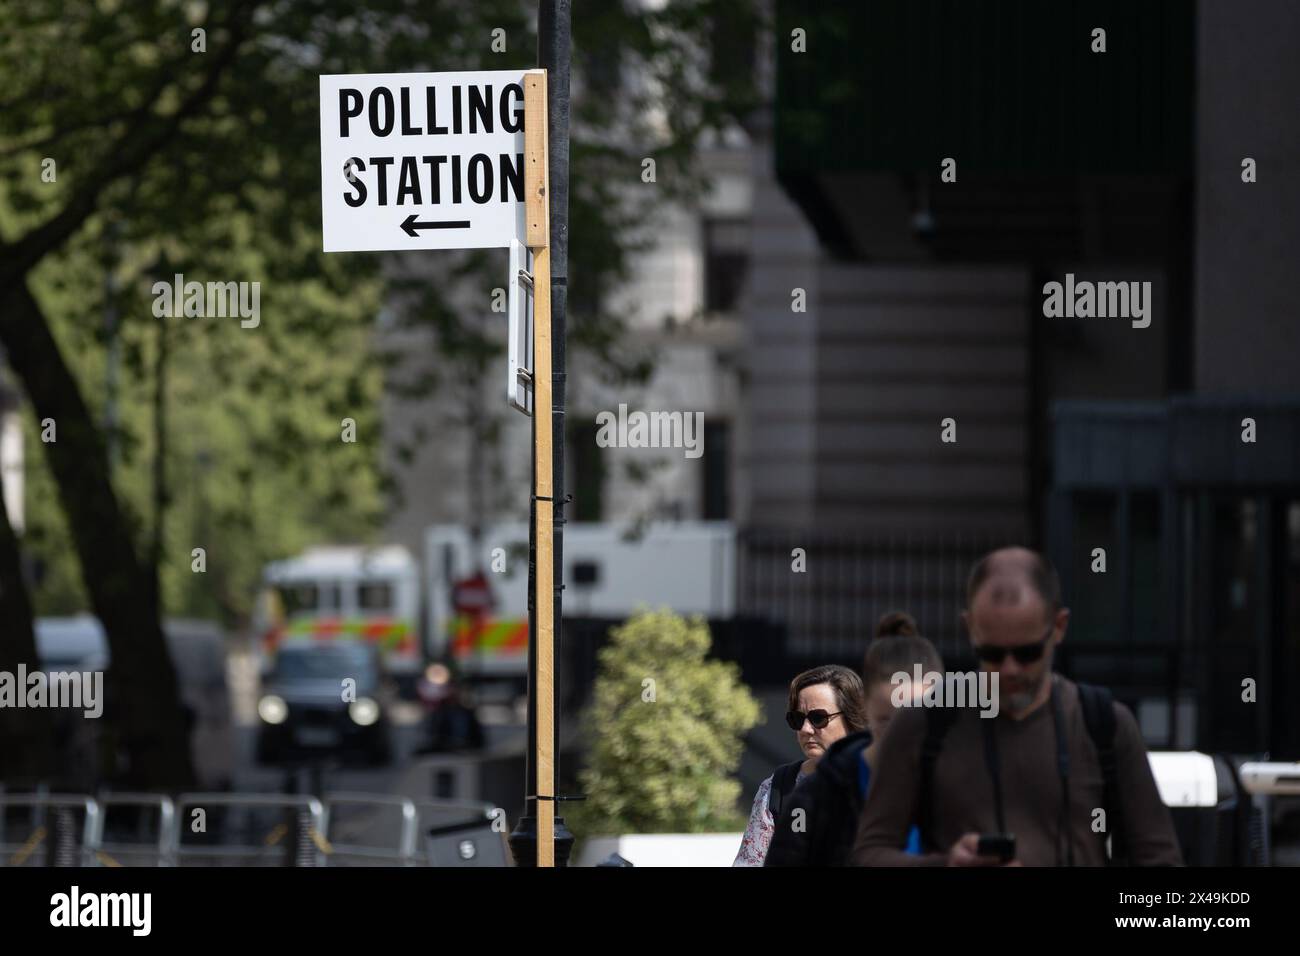 Die Menschen gehen an einem Schild vorbei, das auf eine Wahlstation vor den morgigen Kommunalwahlen in Westminster, London, zeigt. Morgen werden Kommunalwahlen in verschiedenen Teilen des Vereinigten Königreichs stattfinden, in denen die regierende Konservative Partei voraussichtlich zahlreiche Verluste erleiden wird. Stockfoto